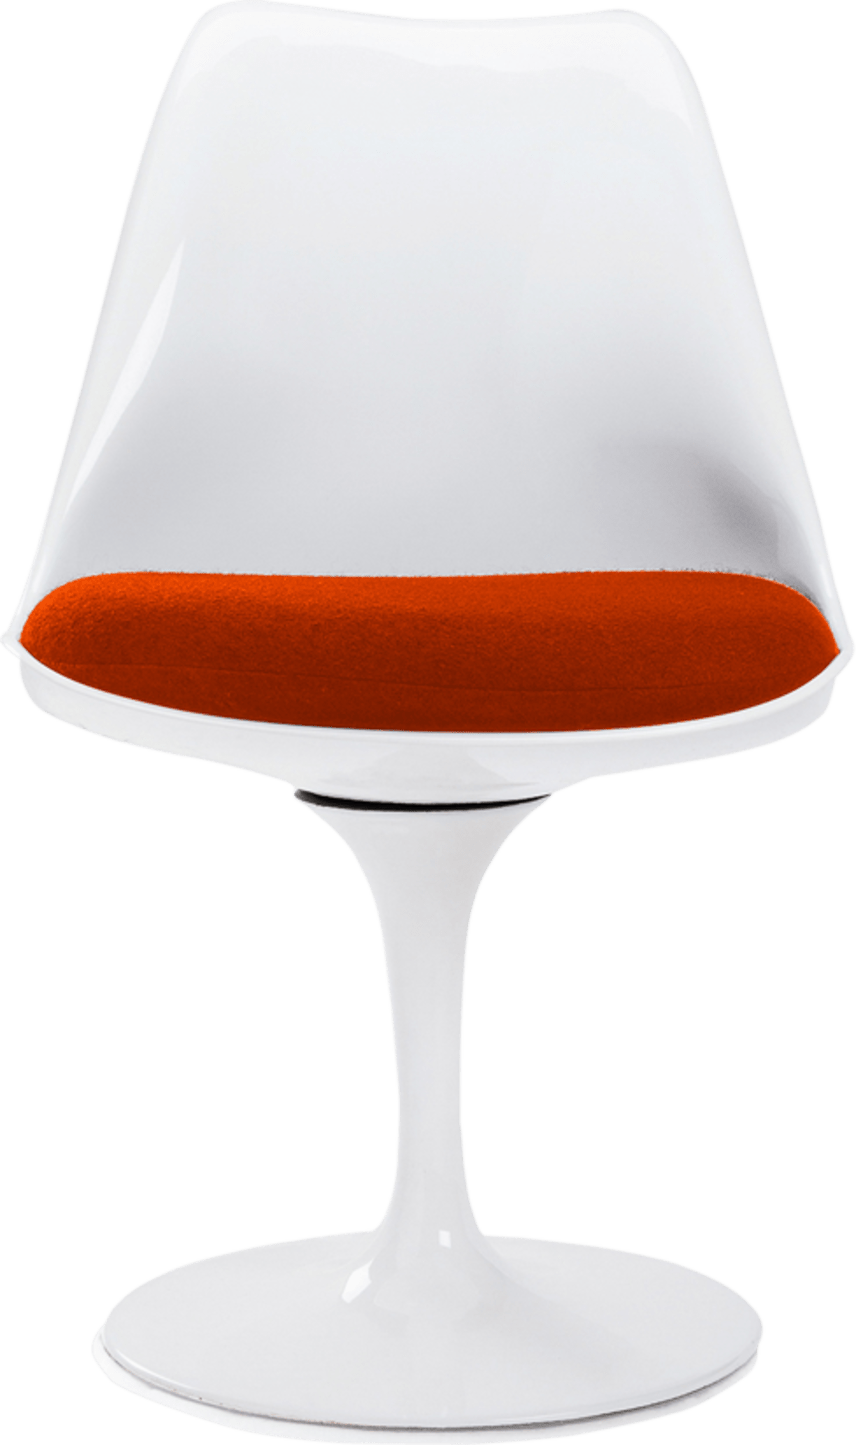 Tulip Chair - Glasfiber Orange/White image.